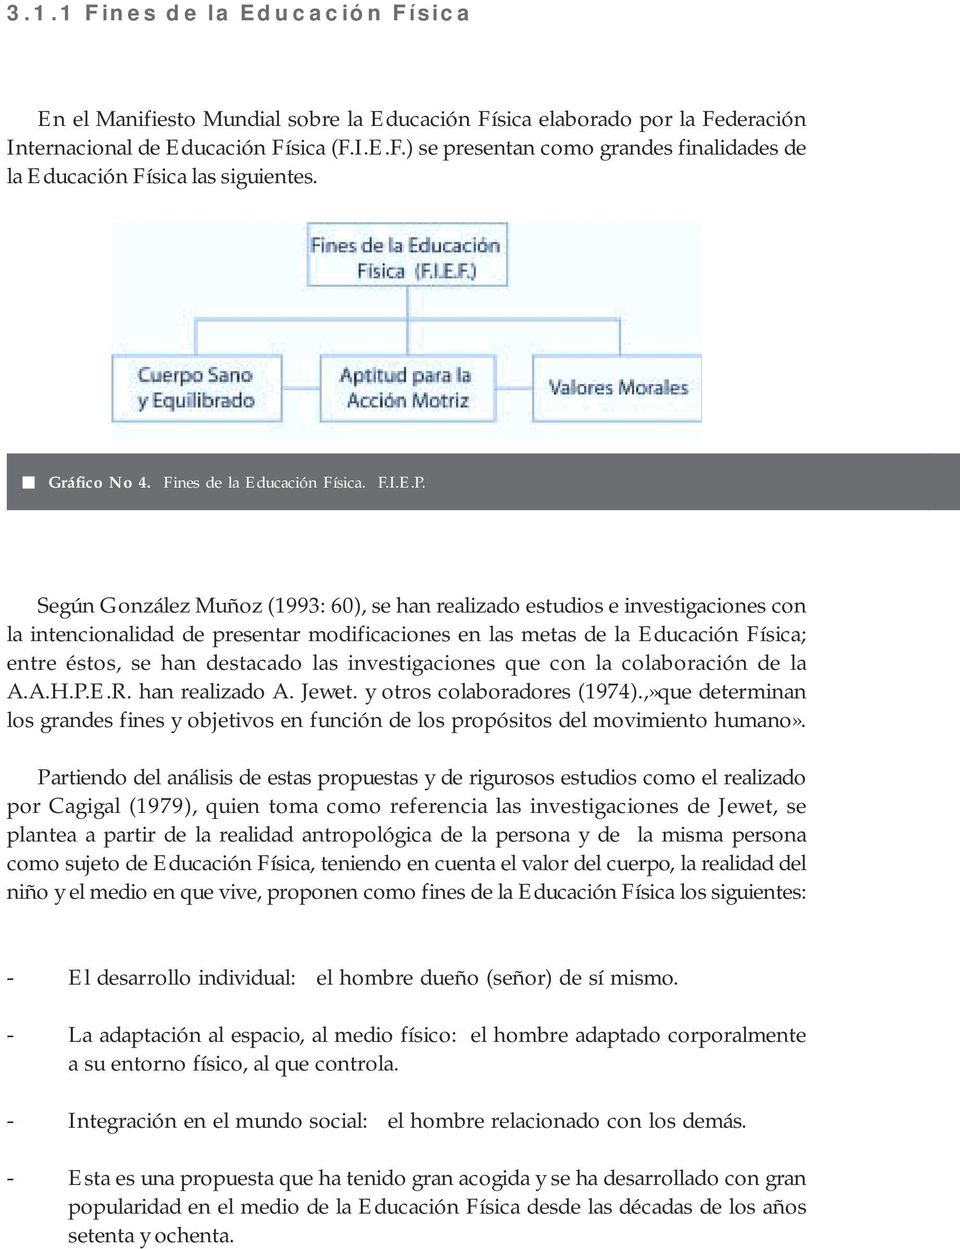 Según González Muñoz (1993: 60), se han realizado estudios e investigaciones con la intencionalidad de presentar modificaciones en las metas de la Educación Física; entre éstos, se han destacado las